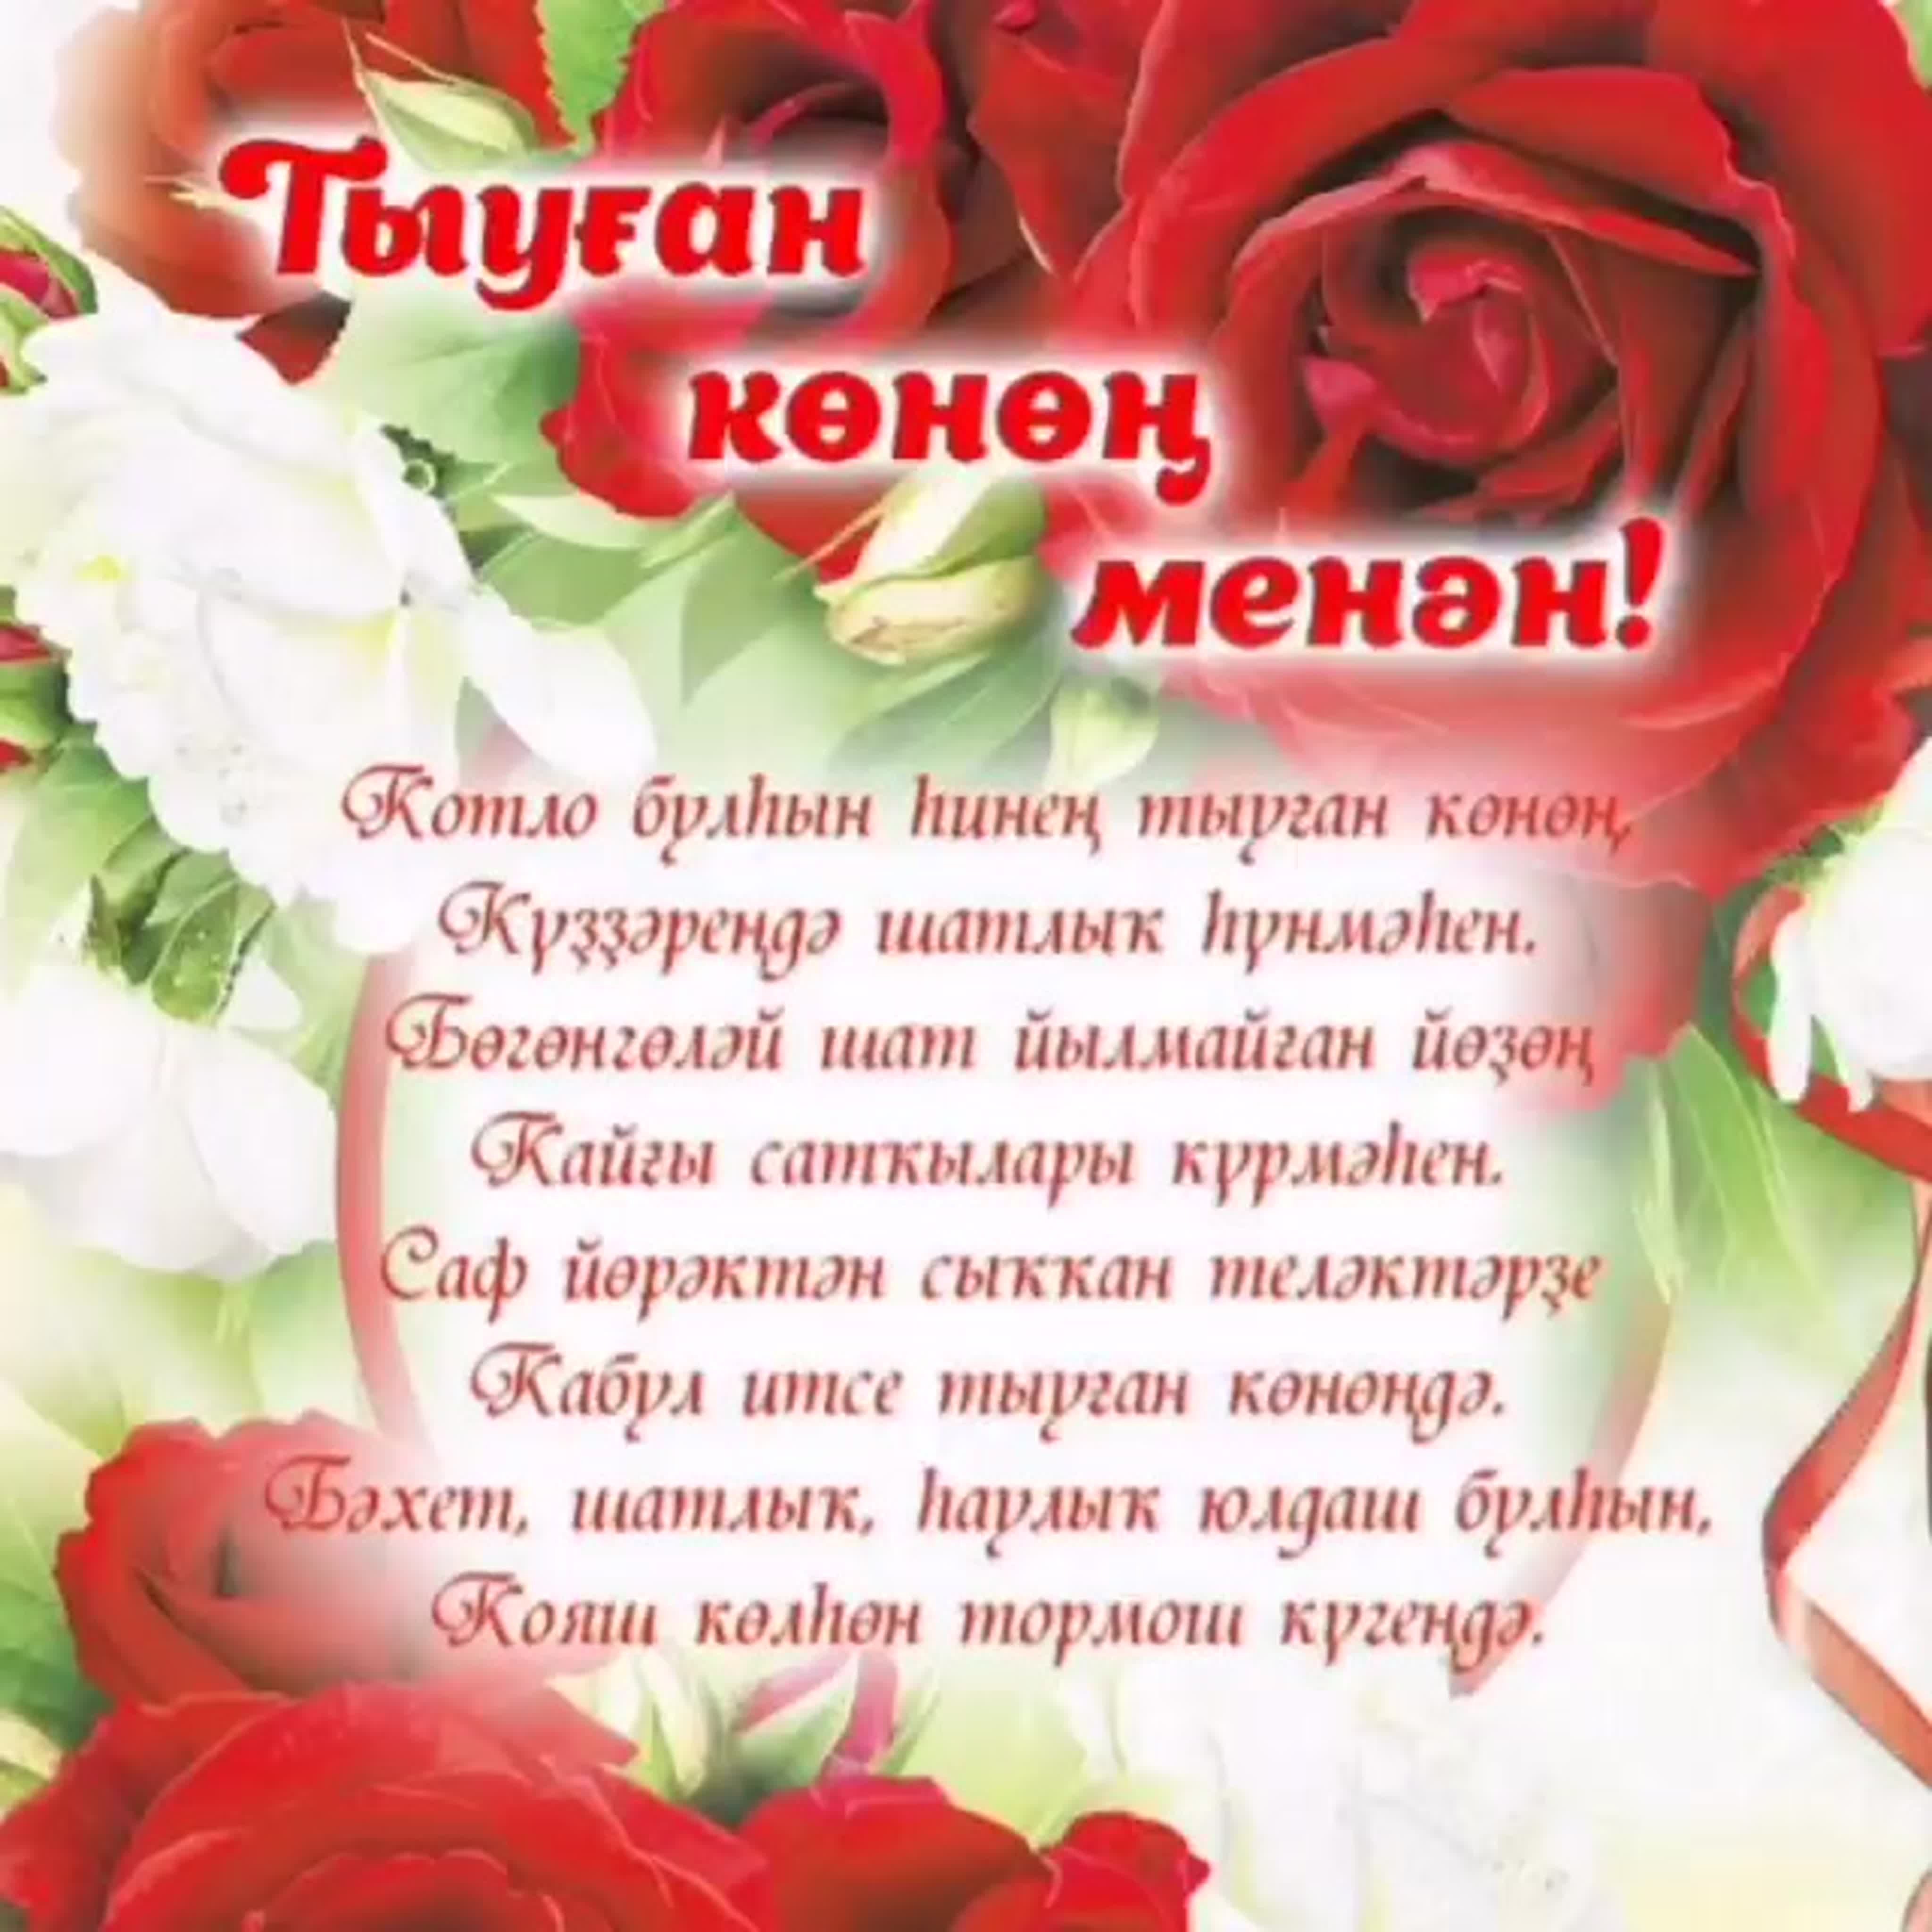 Стих на татарском любви. Поздравления на башкирском языке. Поздравления с днём рождения на башкирском языке. Поздравление на татарском языке. Поздравления с днём рождения женщине на башкирском языке.